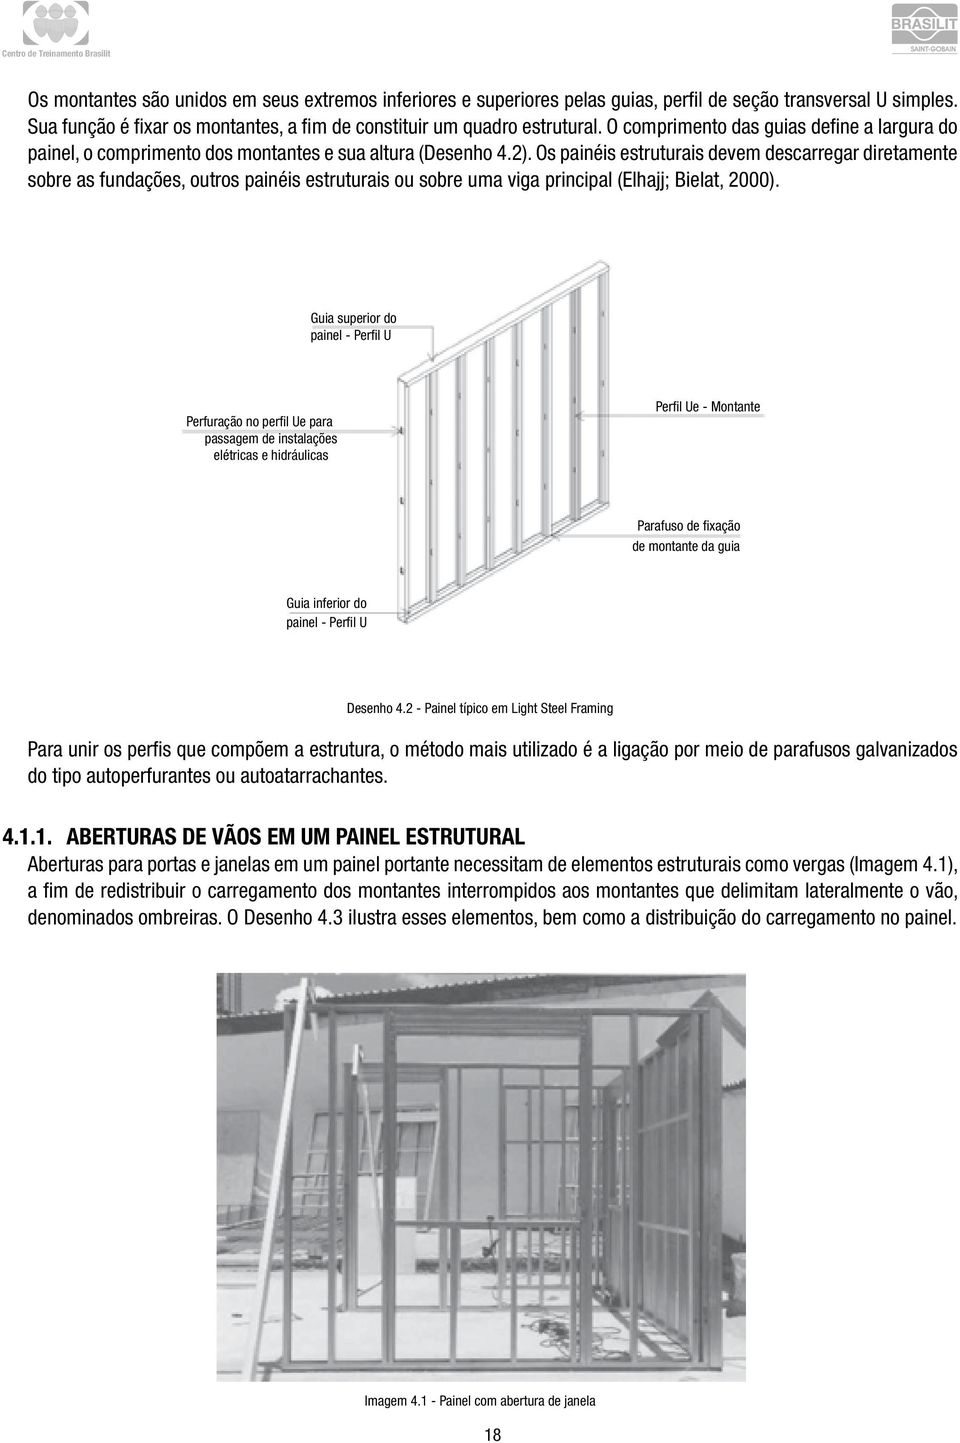 Os painéis estruturais devem descarregar diretamente sobre as fundações, outros painéis estruturais ou sobre uma viga principal (Elhajj; Bielat, 2000).